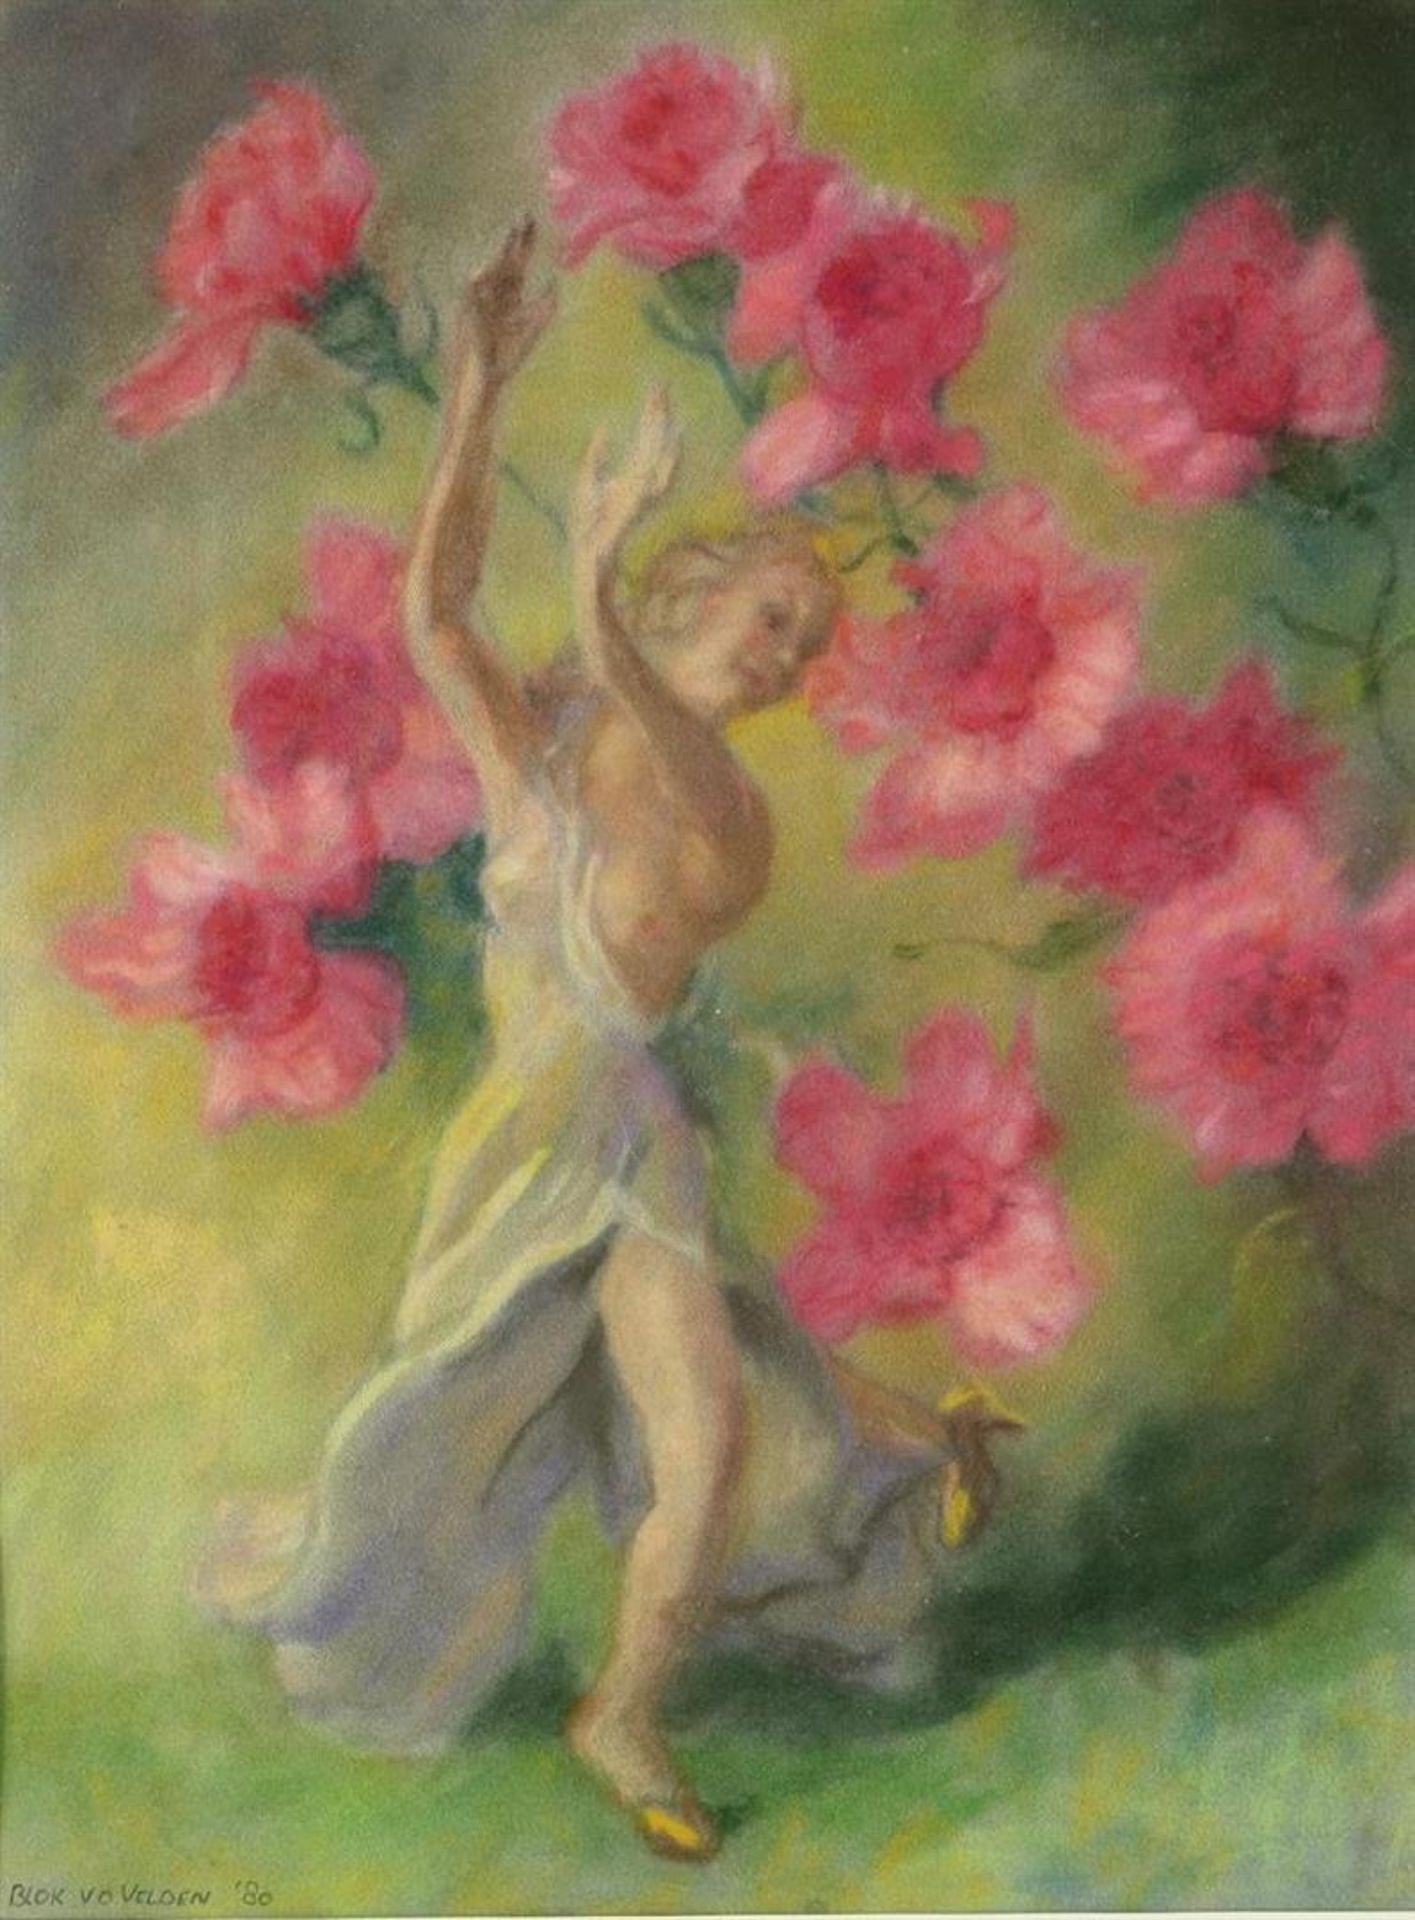 Blok van der Velden, Ad, Female figure with flowers